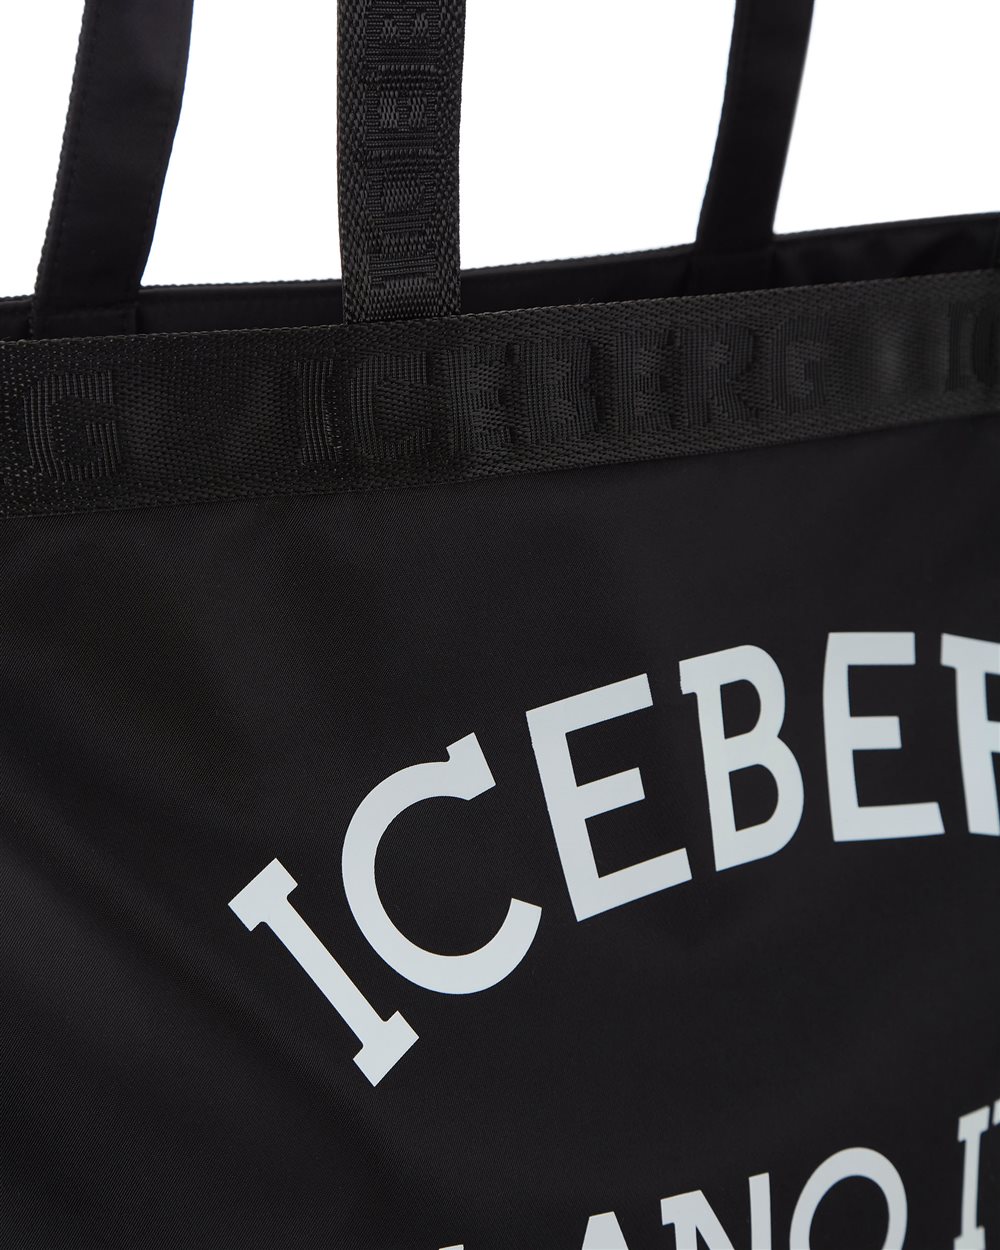 Shopper con logo - Iceberg - Official Website